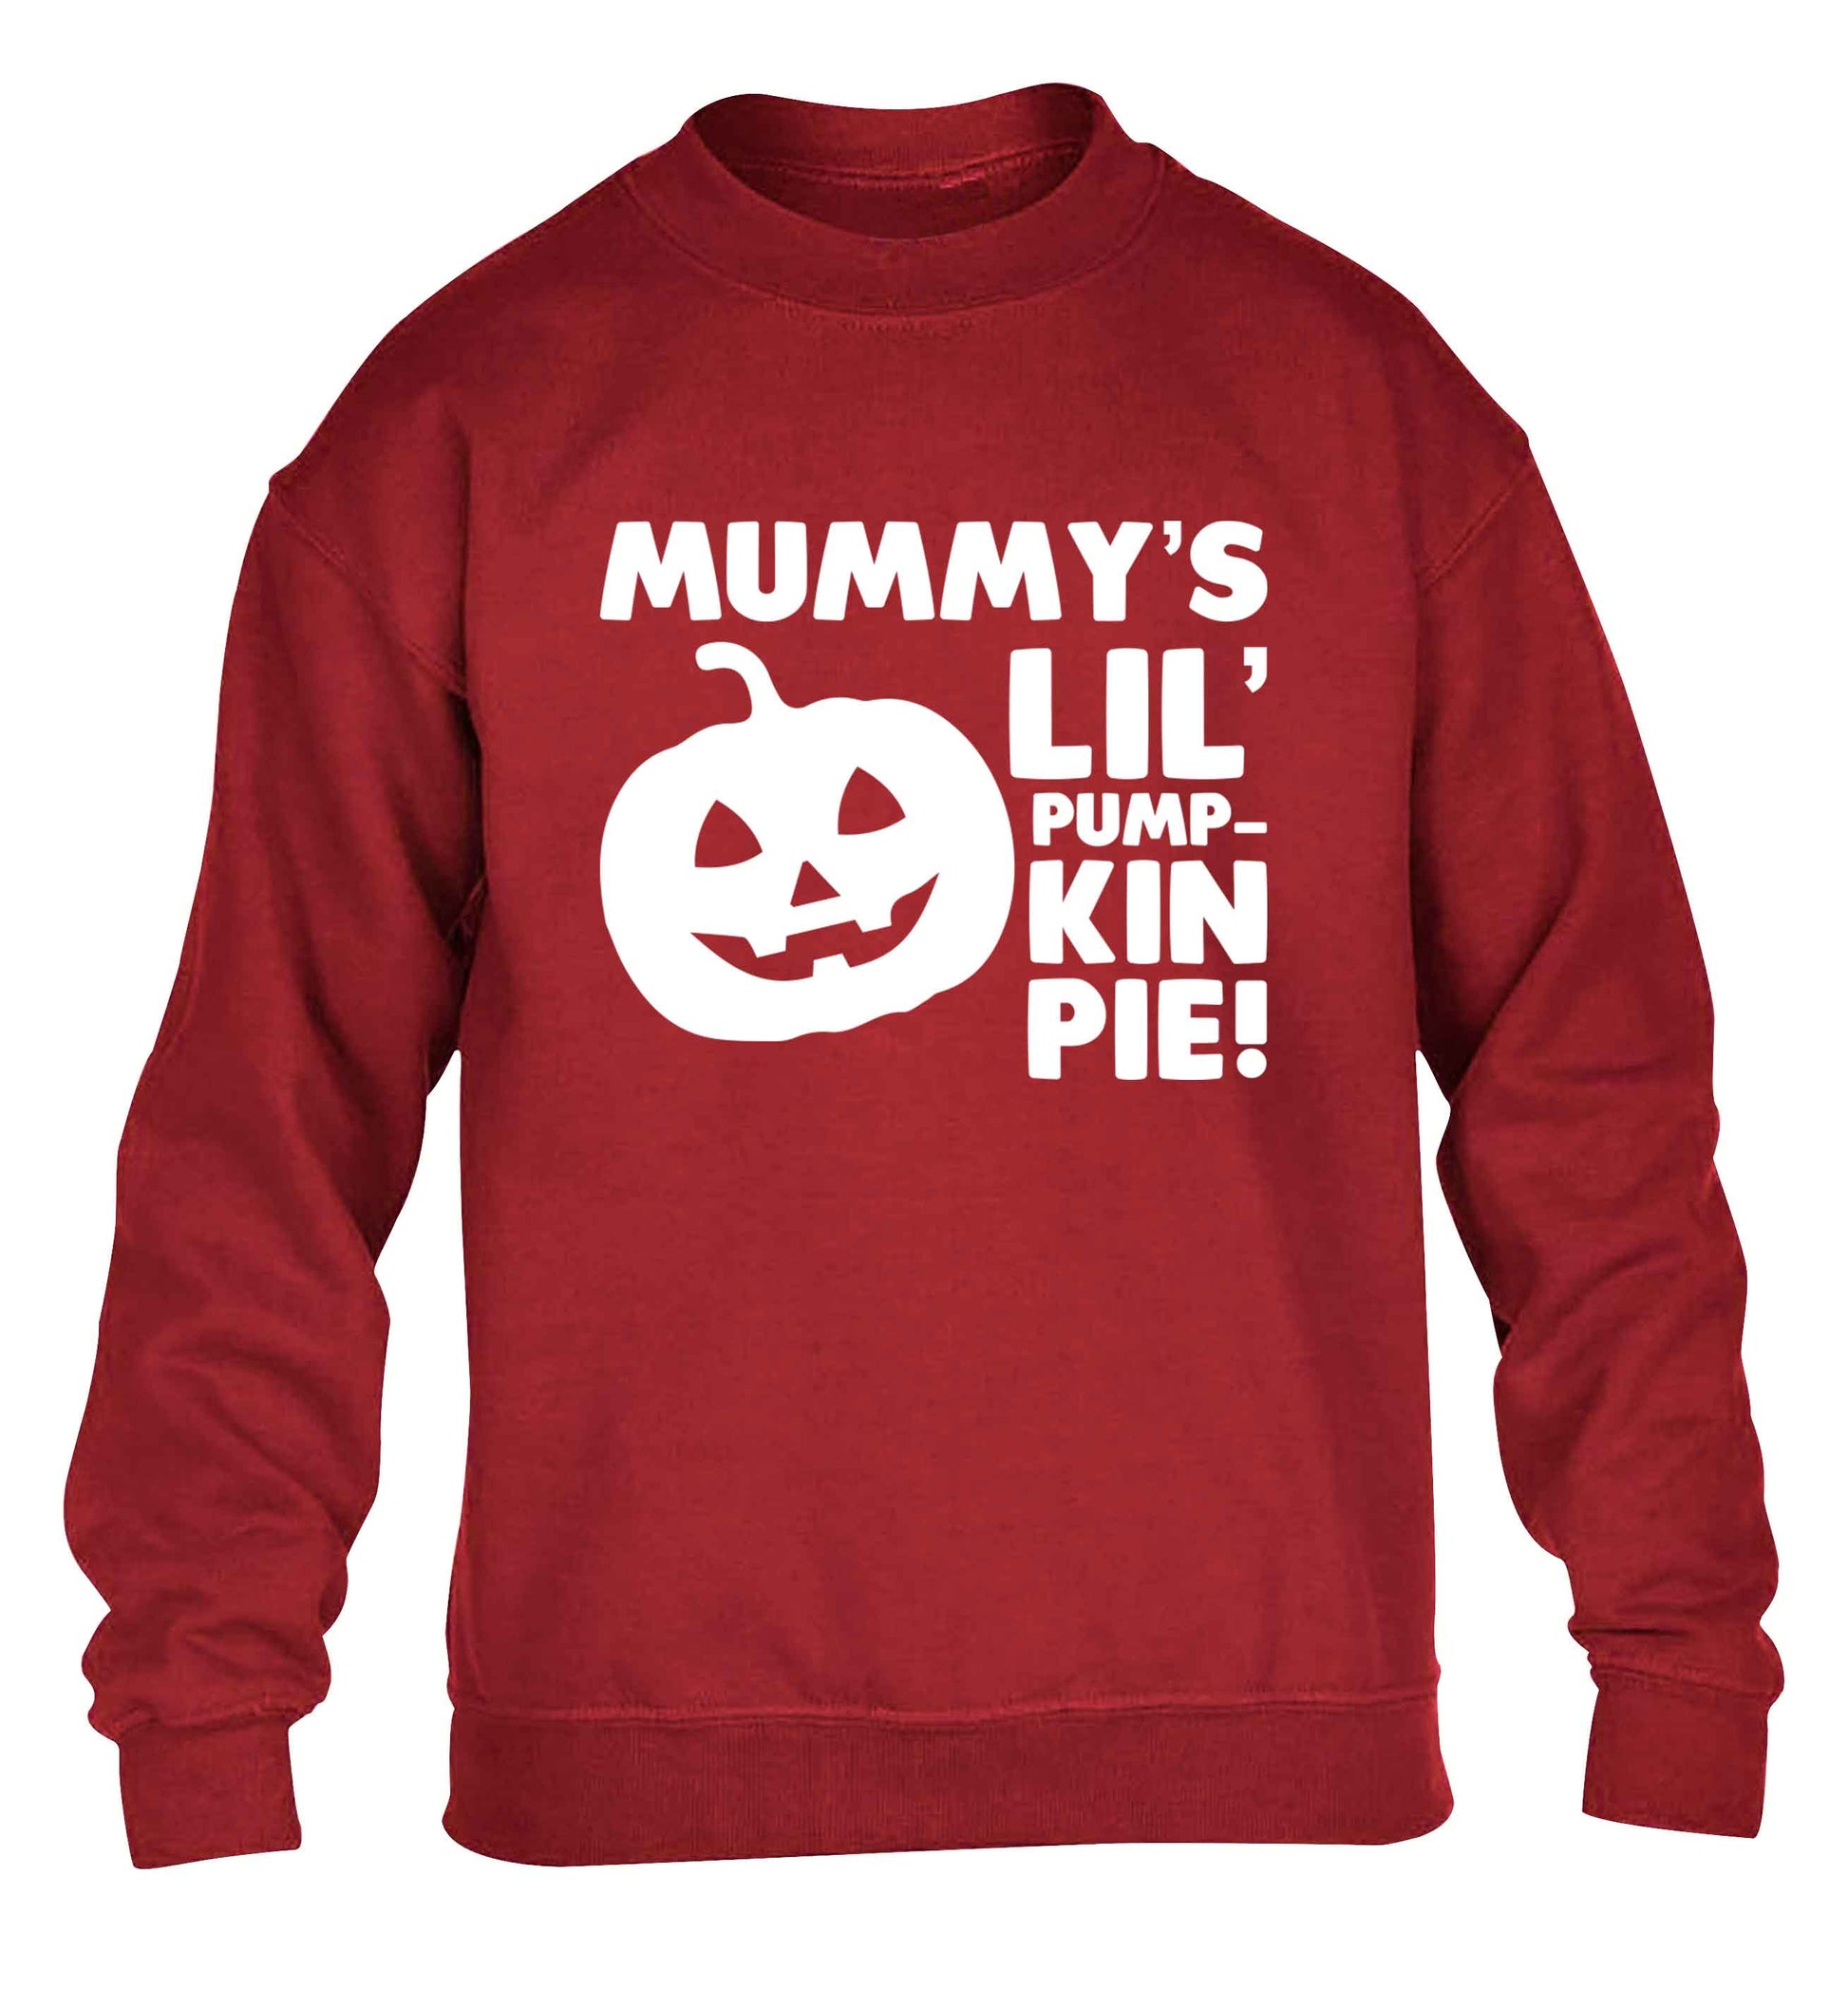 Mummy's lil' pumpkin pie children's grey sweater 12-13 Years